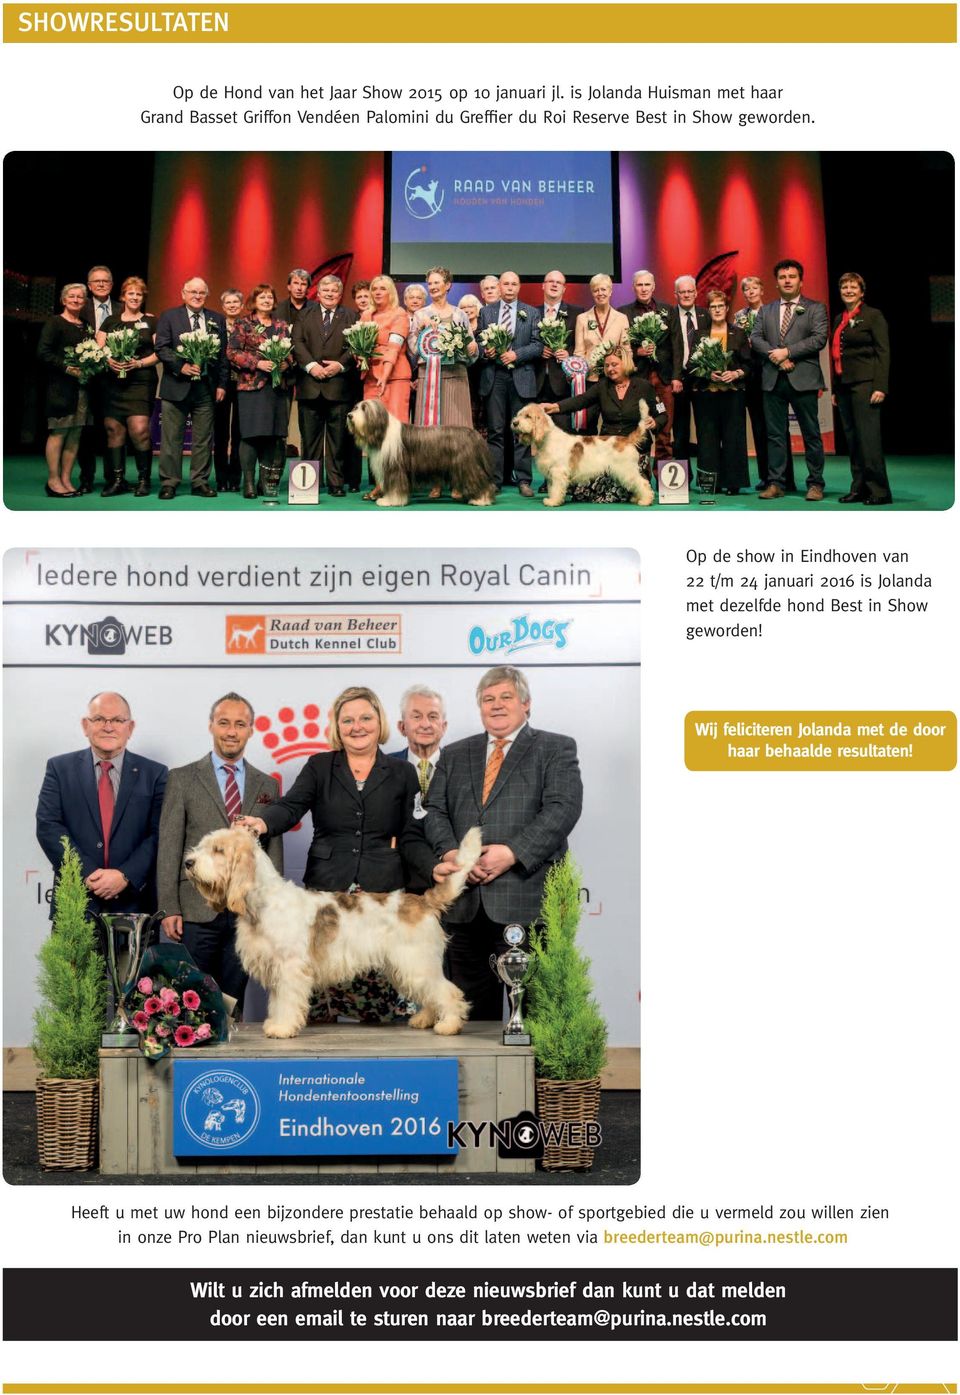 Op de show in Eindhoven van 22 t/m 24 januari 2016 is Jolanda met dezelfde hond Best in Show geworden! Wij feliciteren Jolanda met de door haar behaalde resultaten!